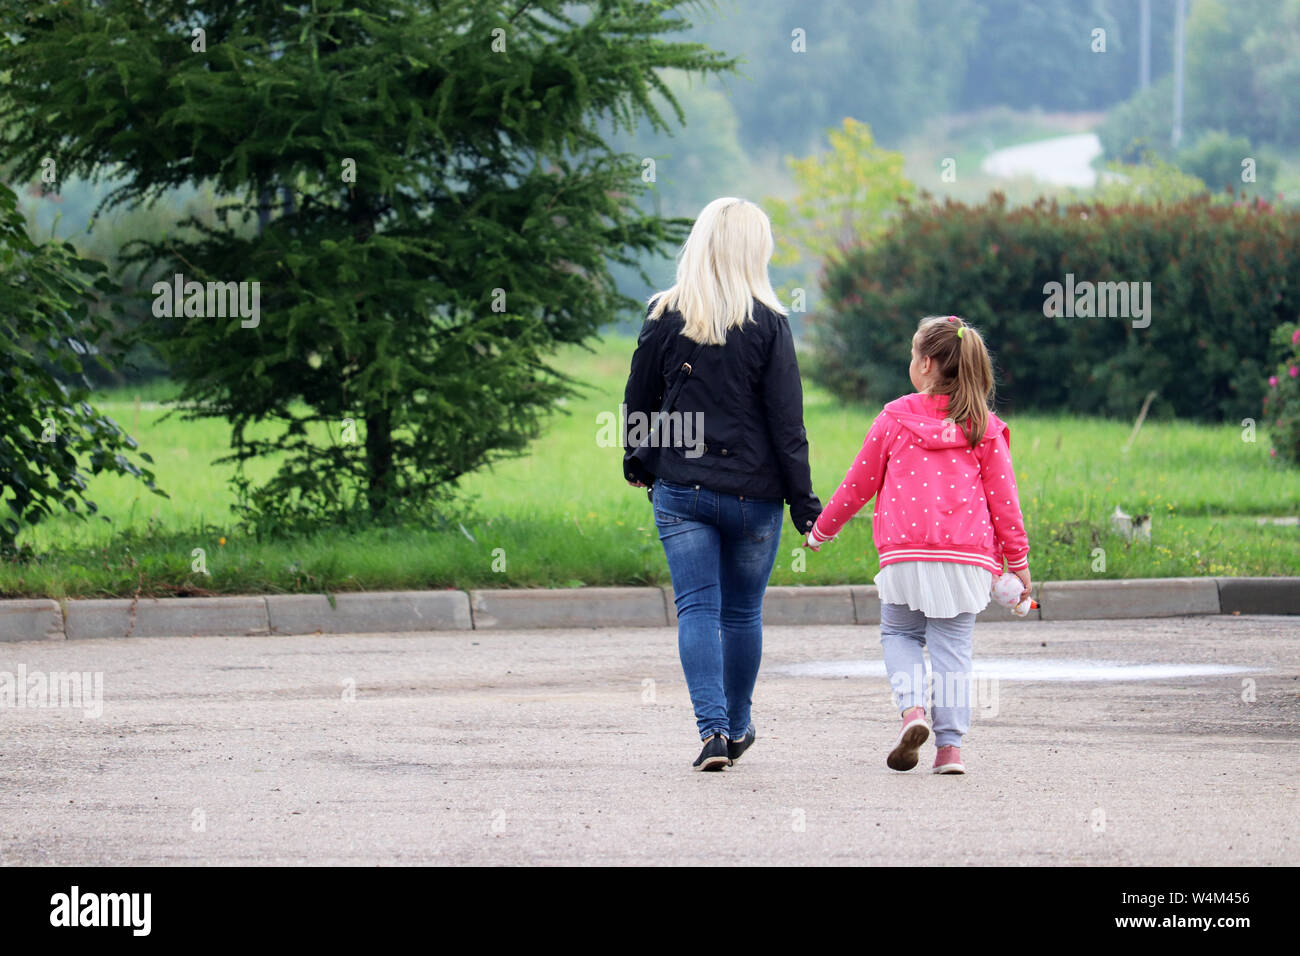 Mutter und Tochter sind zu Fuß in einem grünen Park halten sich an den Händen. Blonde Frau führen kleine Mädchen, Konzept der Mutterschaft, einzelne Mamma oder Babysitter Stockfoto